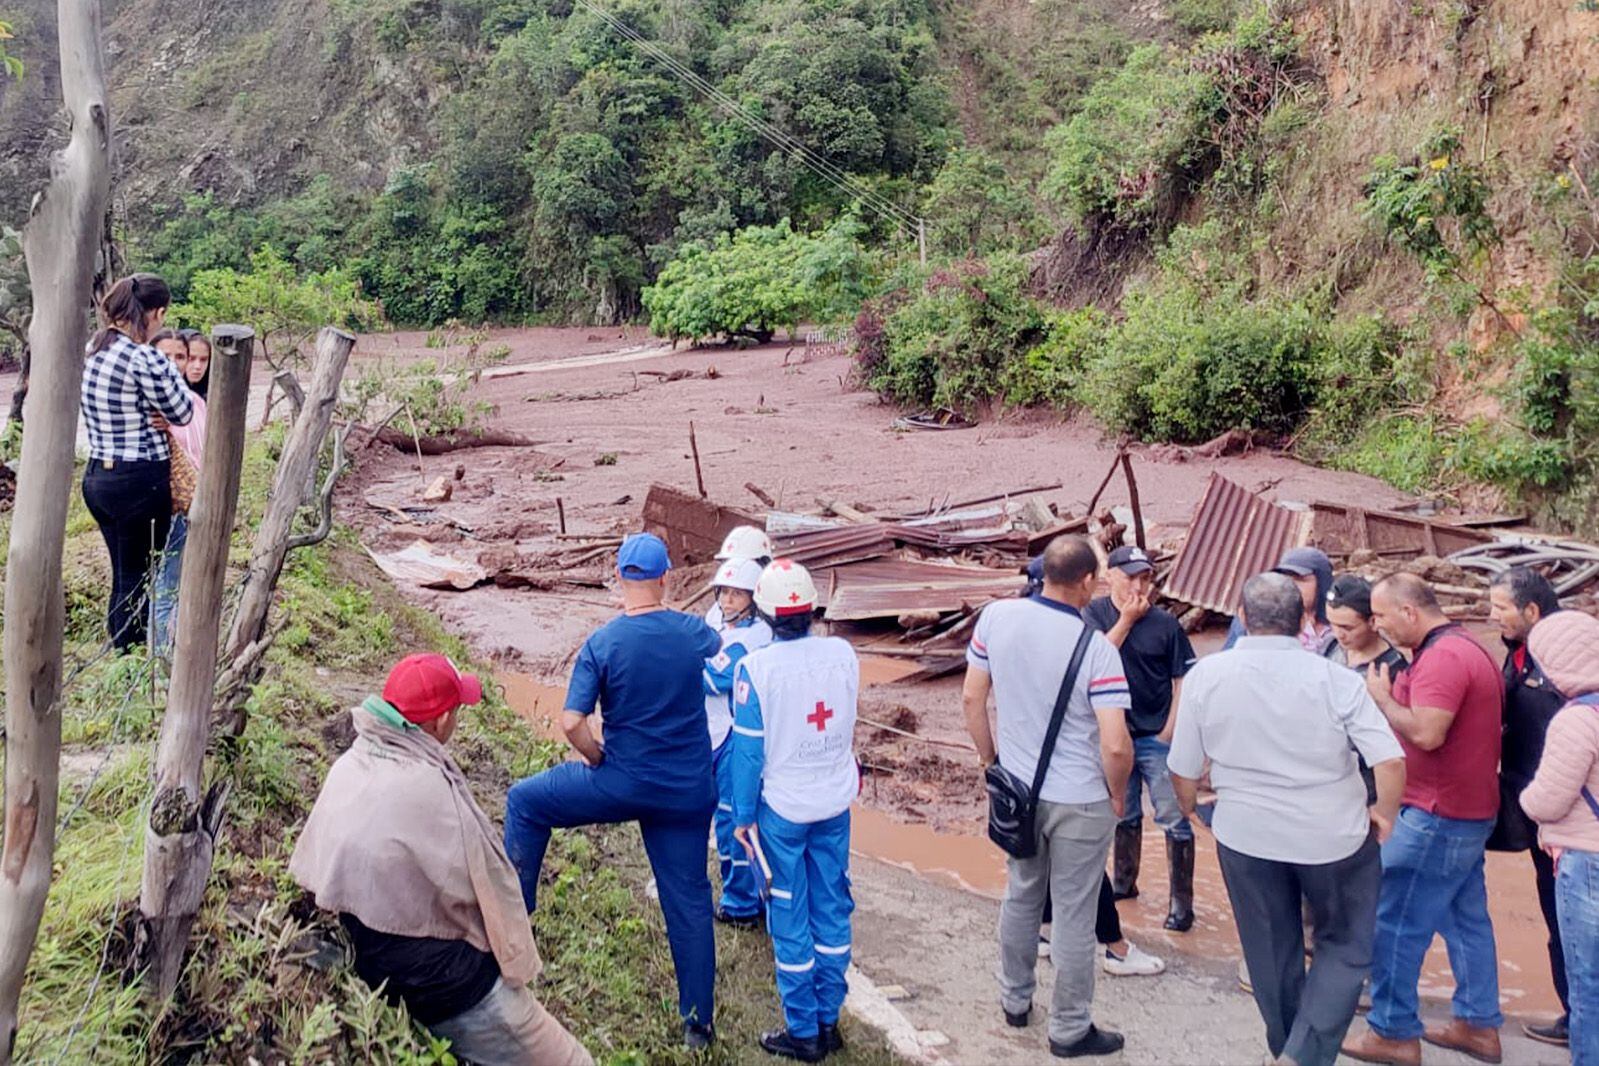 La Cruz Roja Colombiana Seccional Norte de Santander destinó ayudas humanitarias para 100 familias en Villa Caro. Cortesía: Facebook Cruz Roja Colombiana Seccional Norte de Santander.